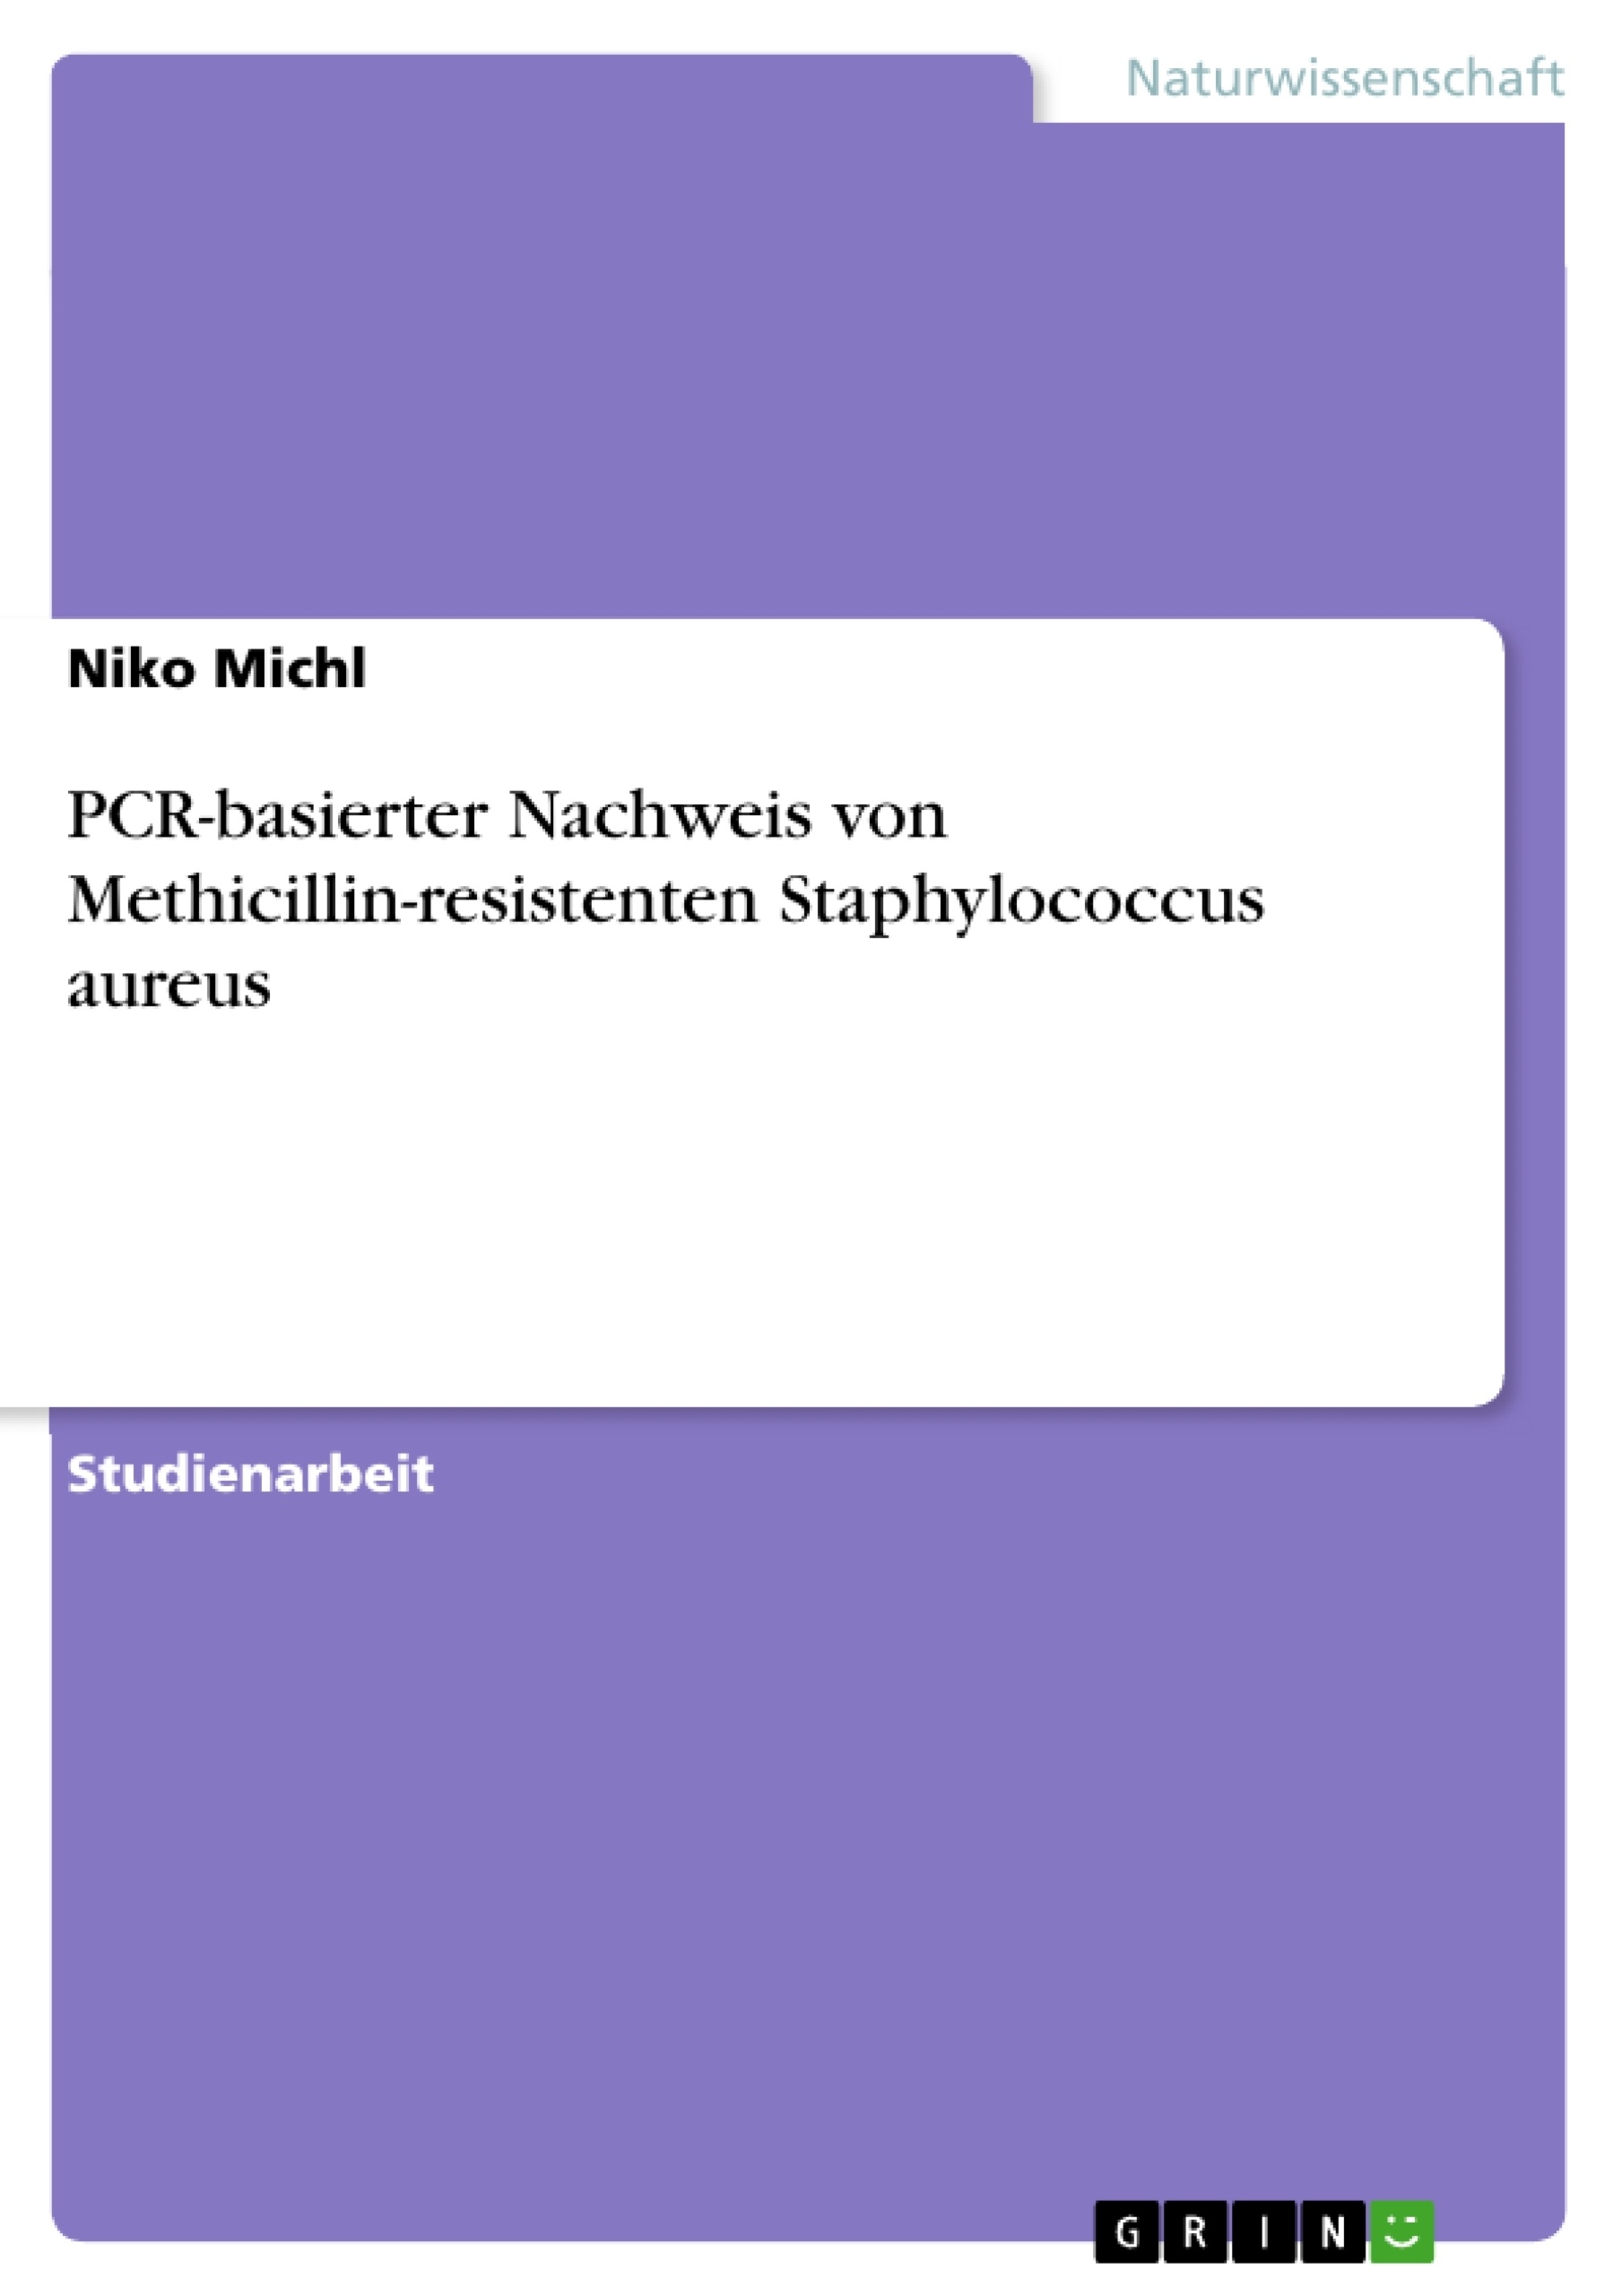 Titre: PCR-basierter Nachweis von Methicillin-resistenten Staphylococcus aureus